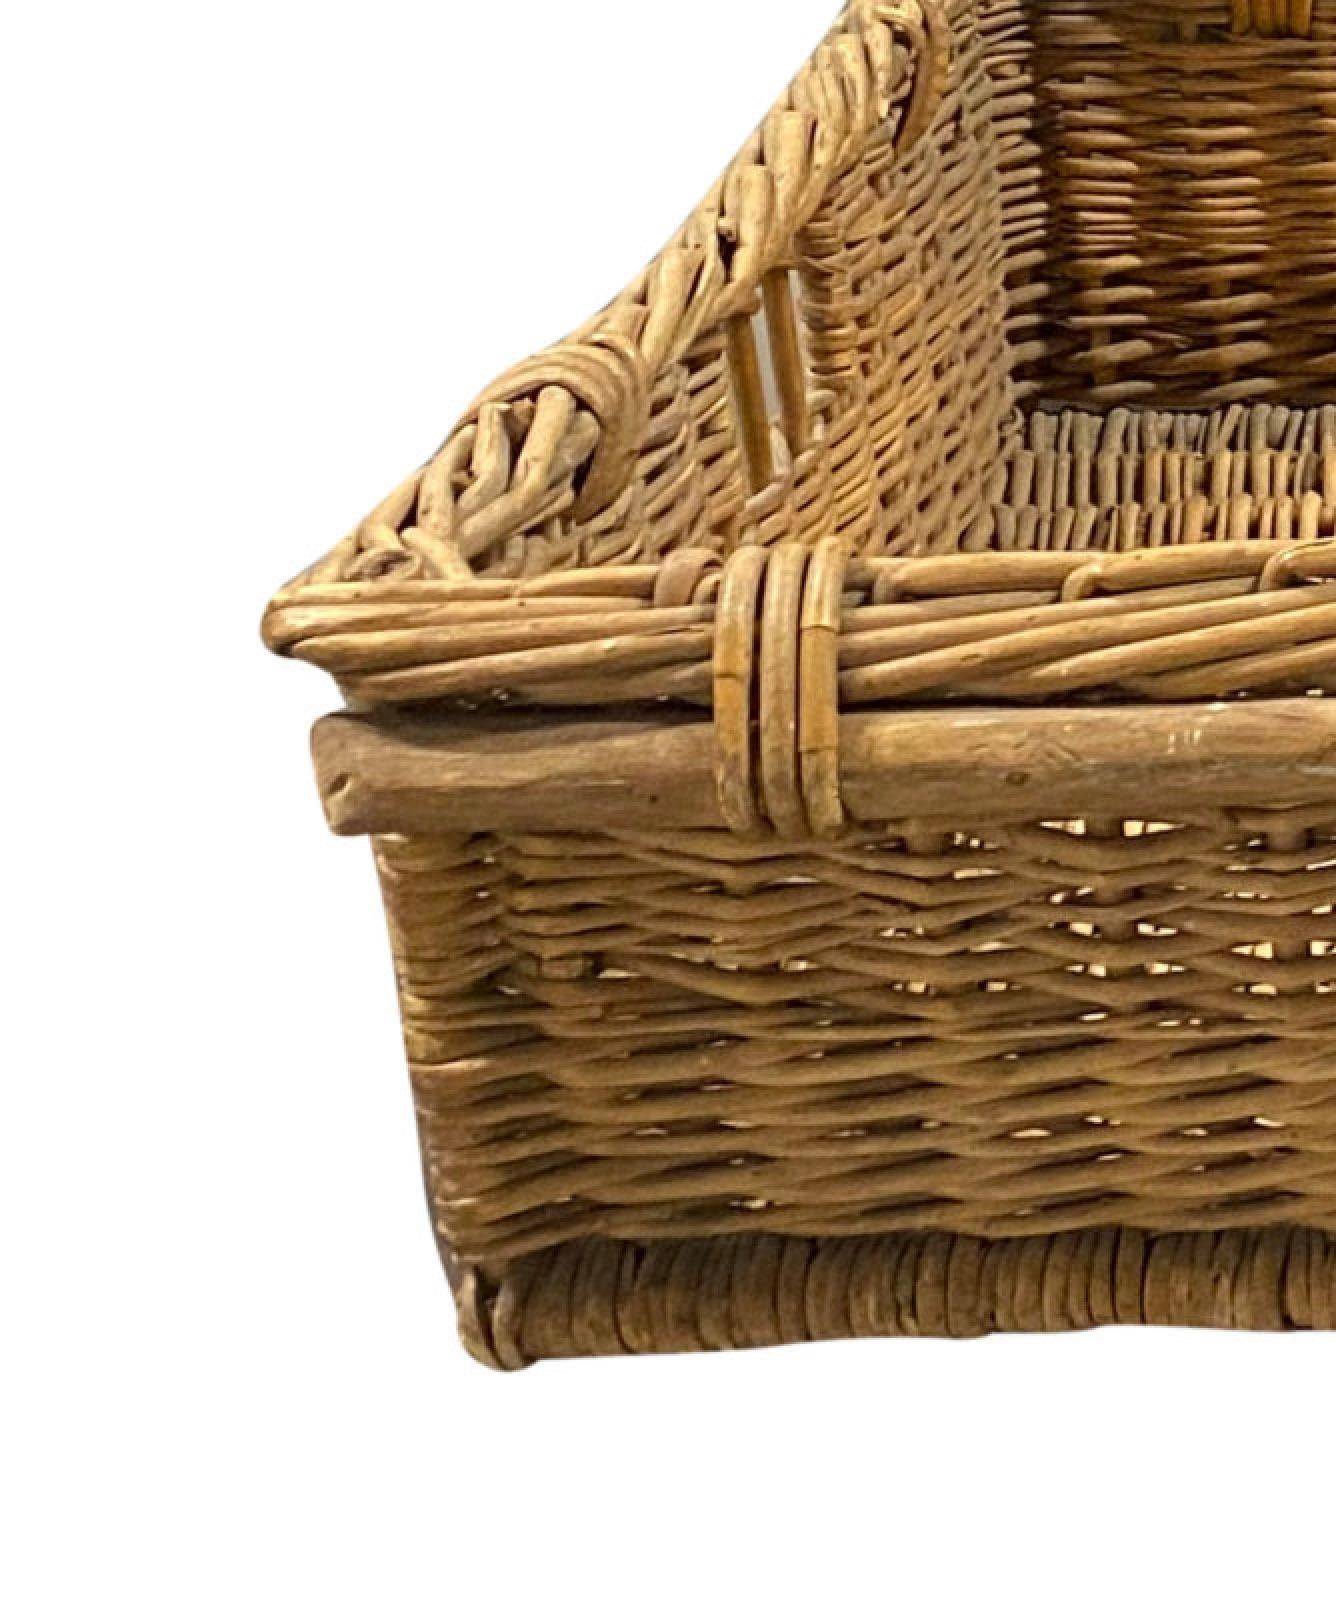 Breiter flacher Vintage-Wäschekorb aus Weide

Hervorragend geeignet als rustikales Hundebett in der Waschküche oder im Abstellraum

Beschädigung des rechten Griffs

41″L x 20″W x 9″H